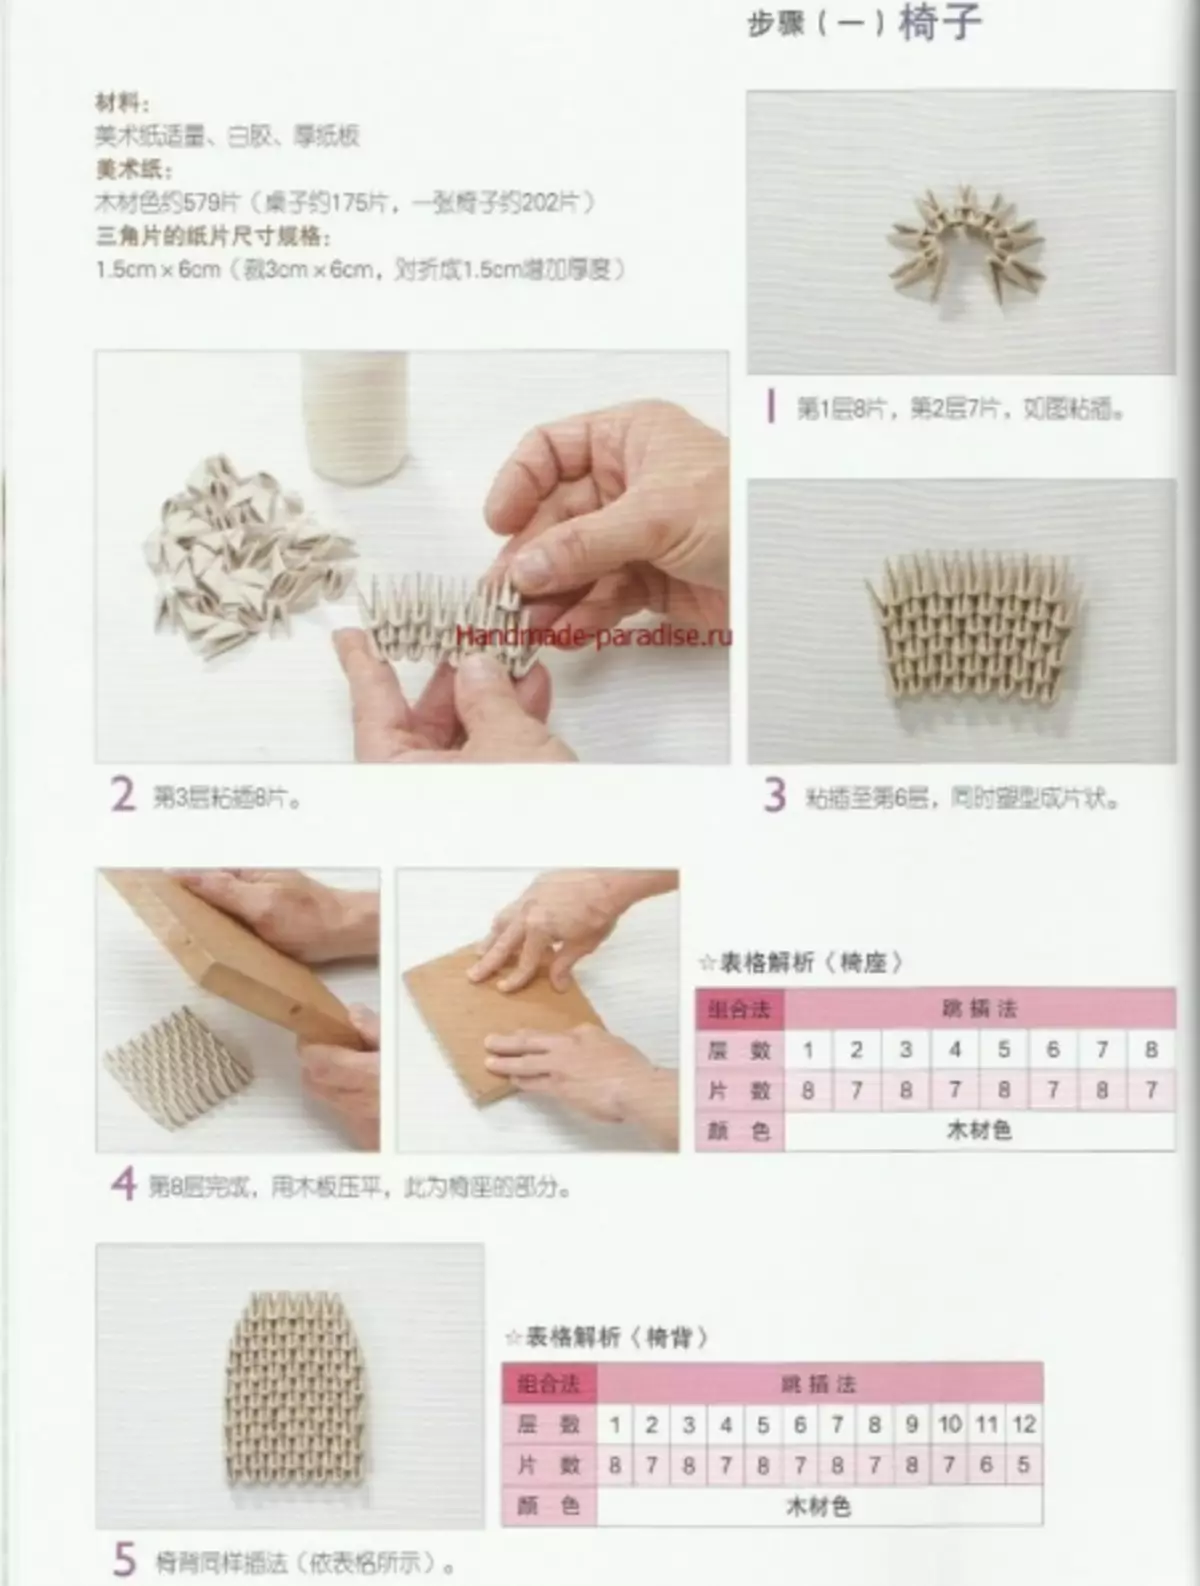 Modular Origami. Japanesch Magazin mat Masterklassen